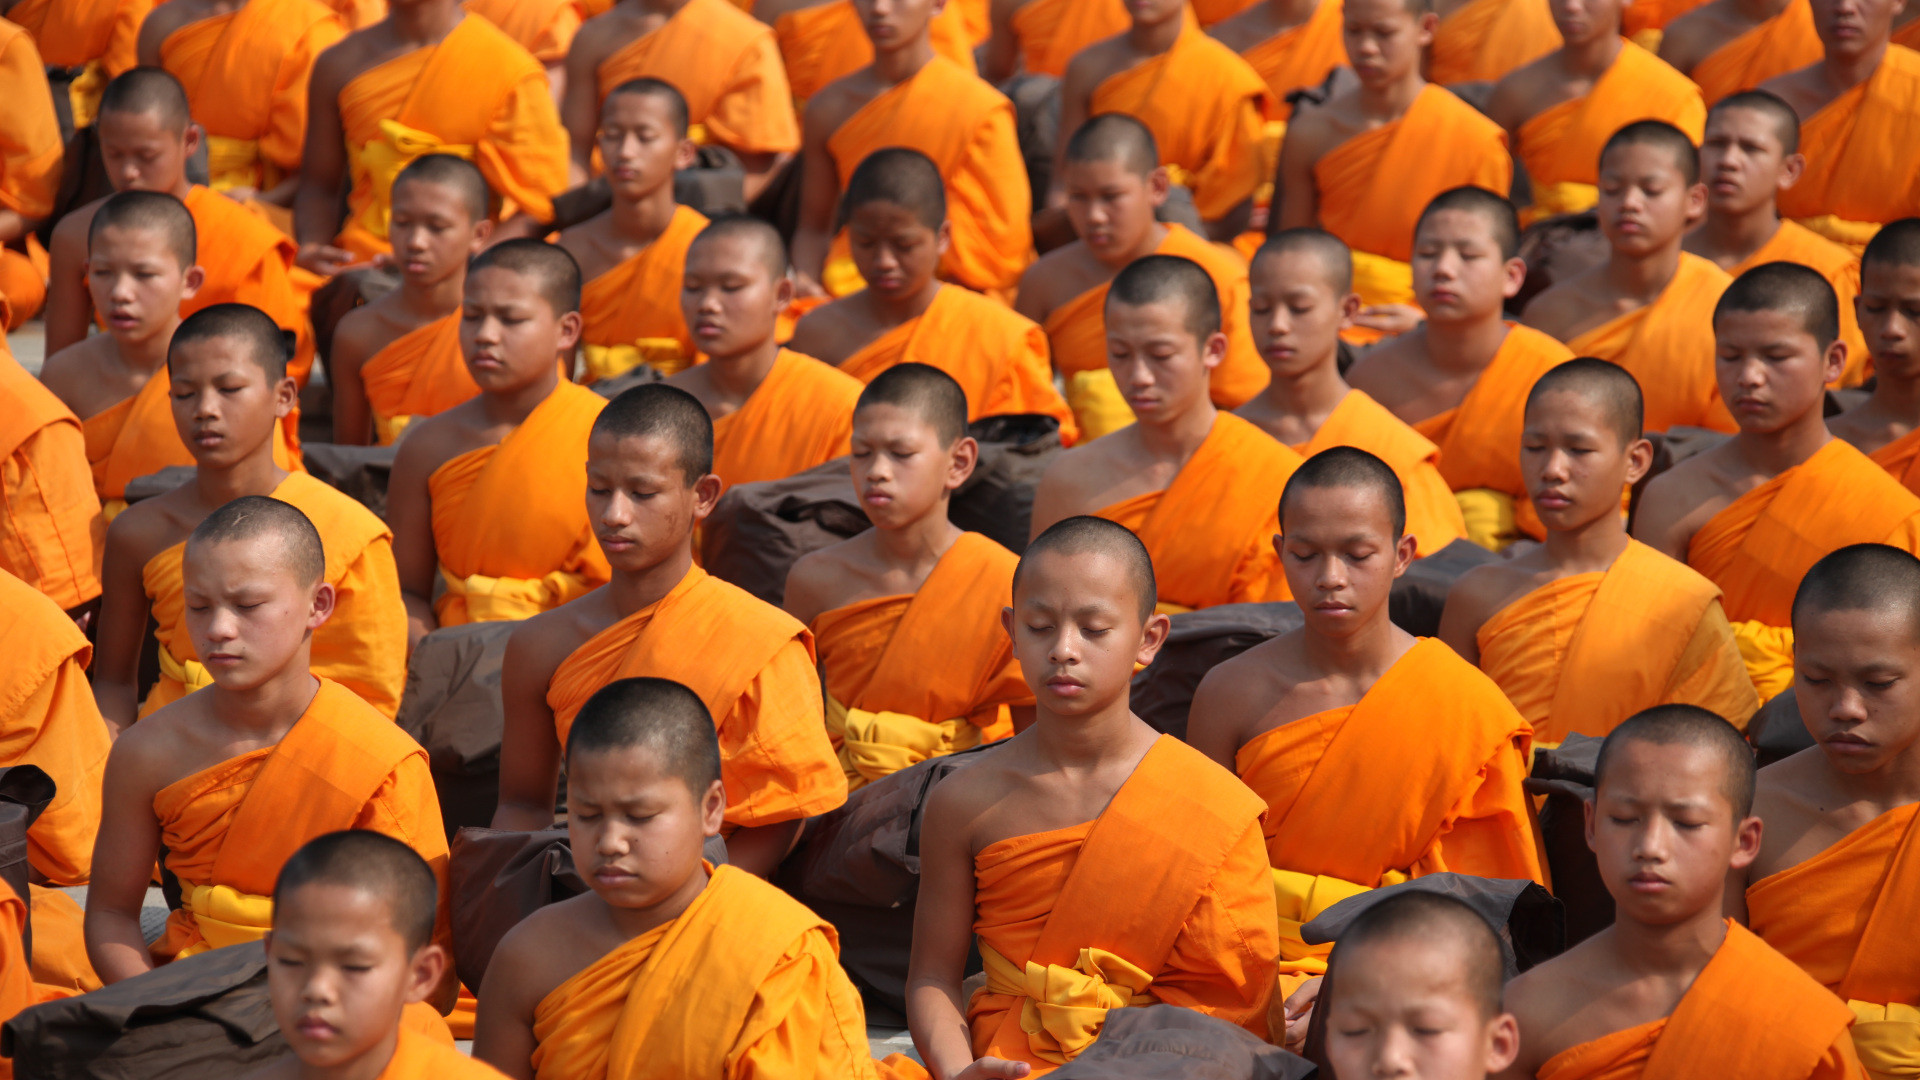 Buddhistische Mönche, Thailand